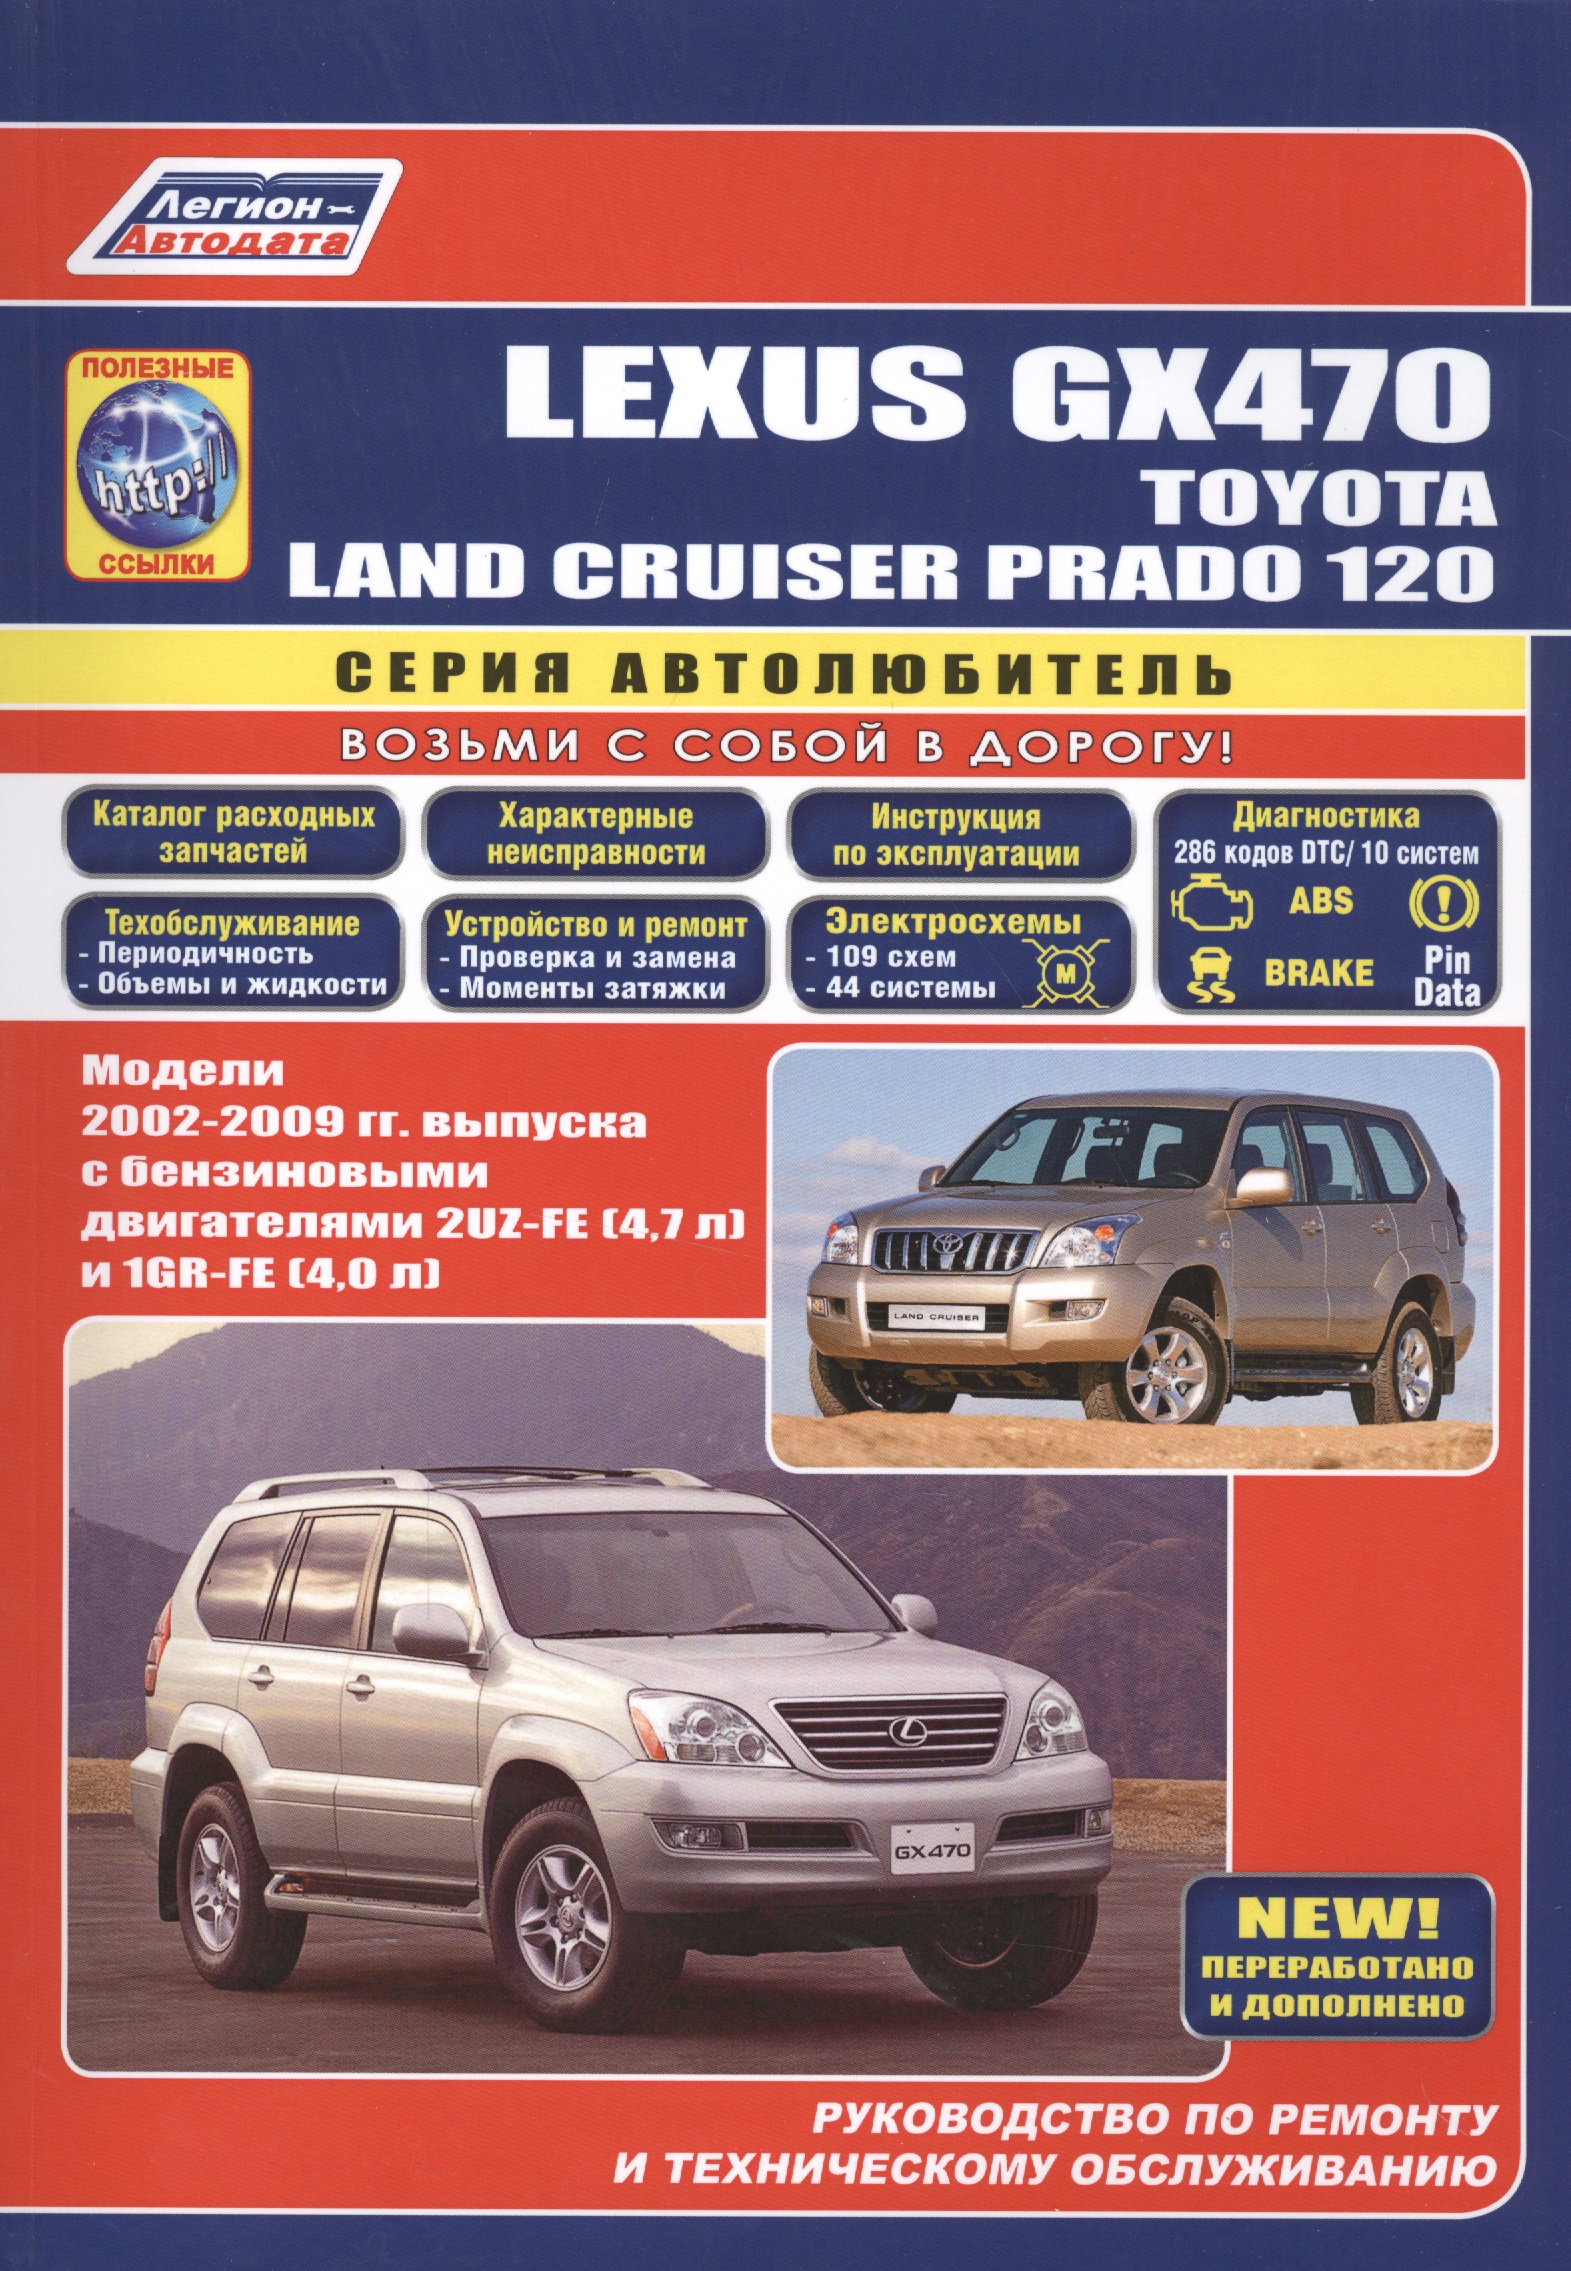 Lexus GX470 Toyota Land Cruiser Prado 120 Модели 2002-2009 гг. вып. (м/тв) (мАвтолюбитель) датчик давления впускного коллектора воздуха для toyo ta land cruiser fzj78 79 fzj105 nhw11 1fz fe 1 шт 89421 20190 079800 4410